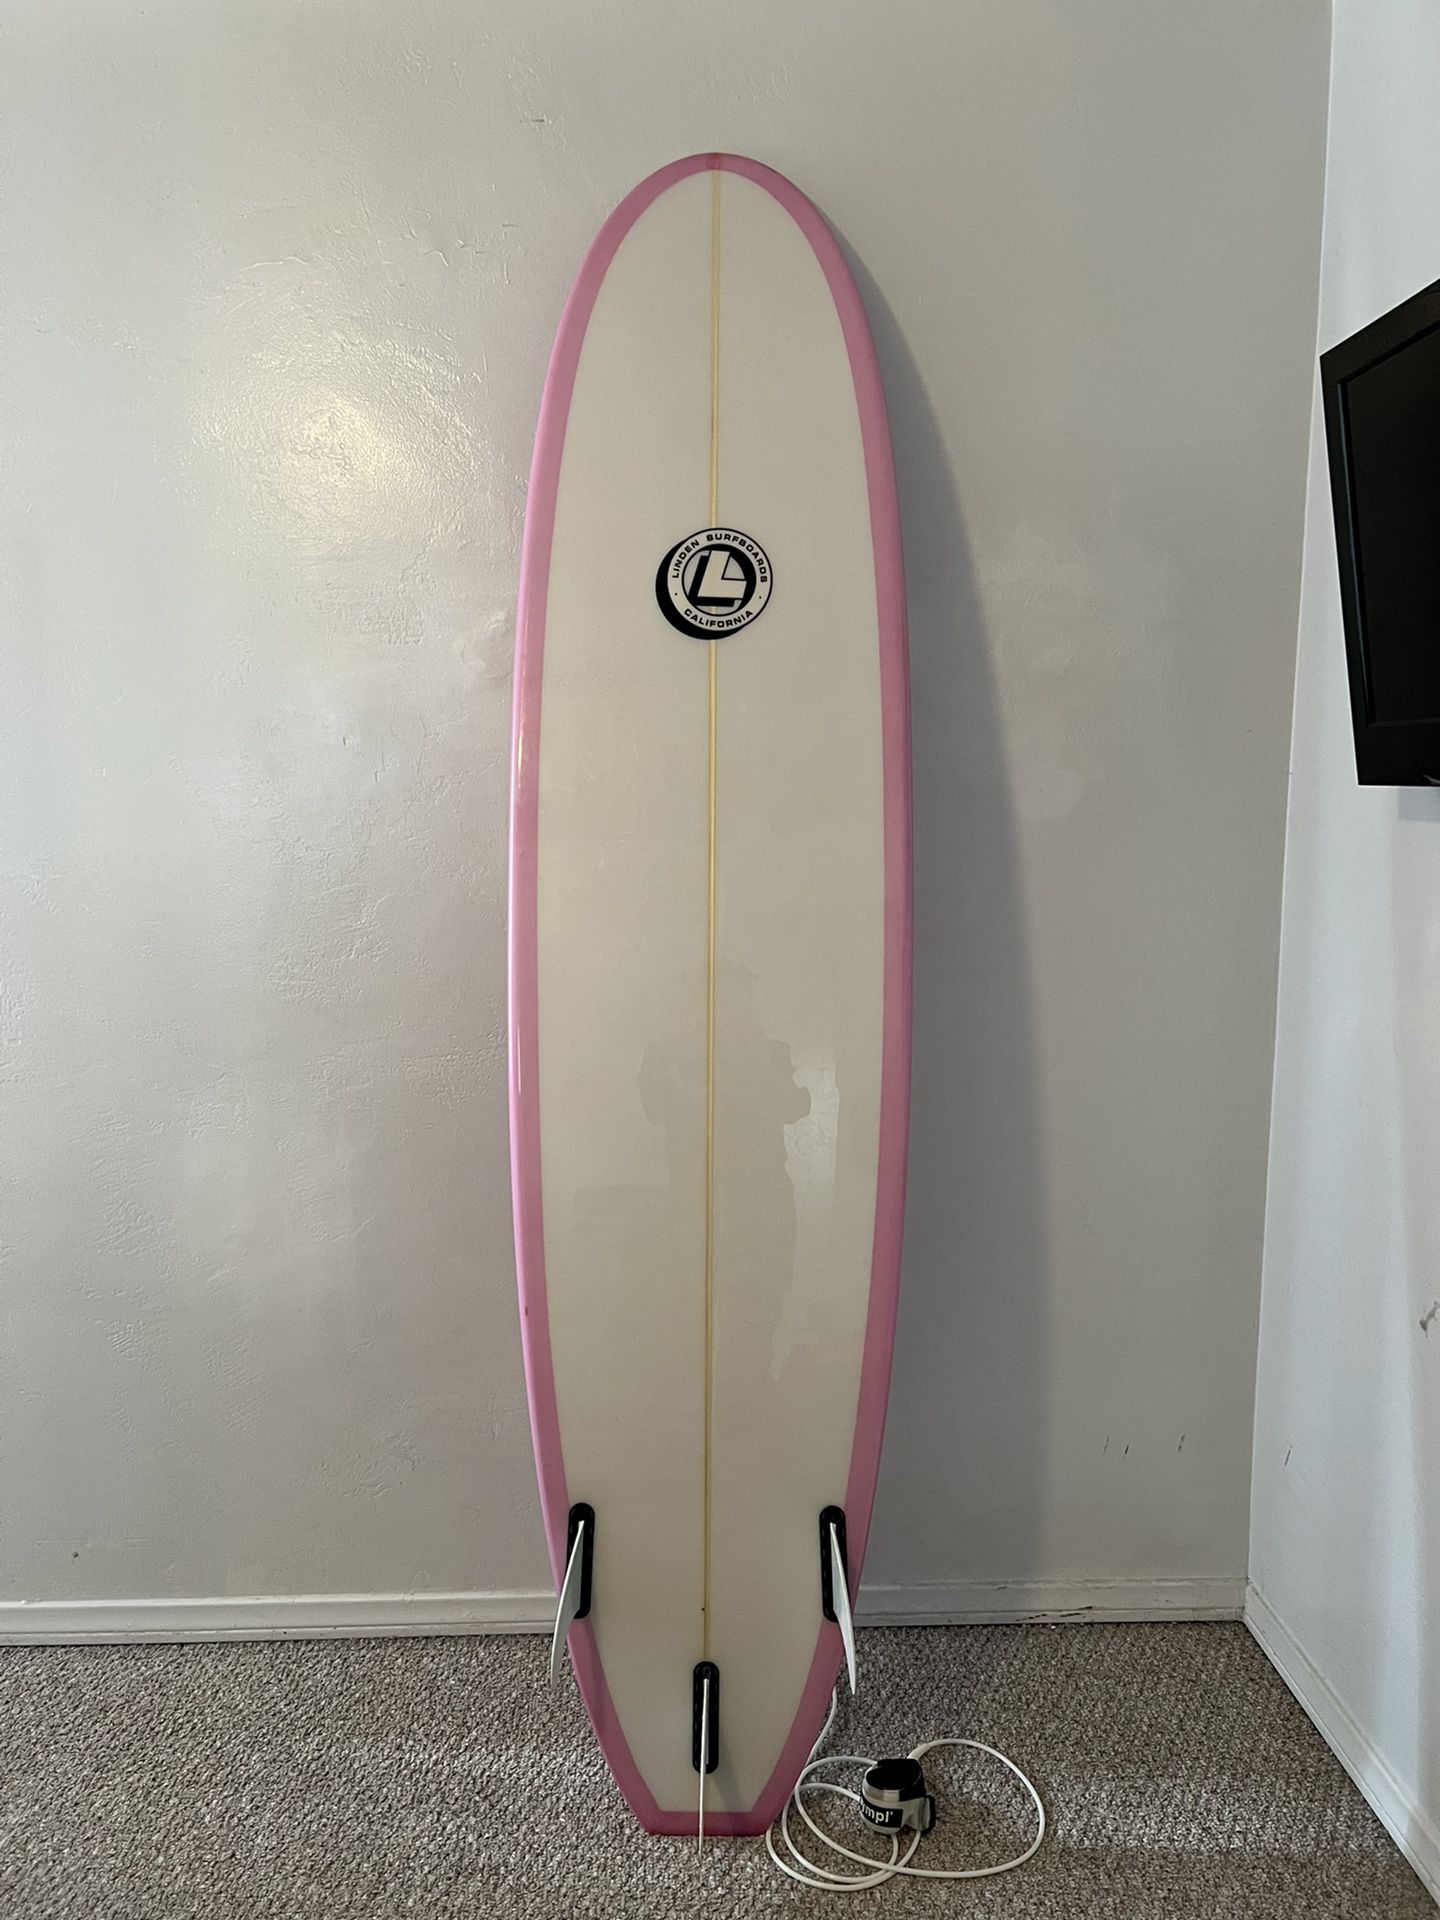 7’6” like new surfboard